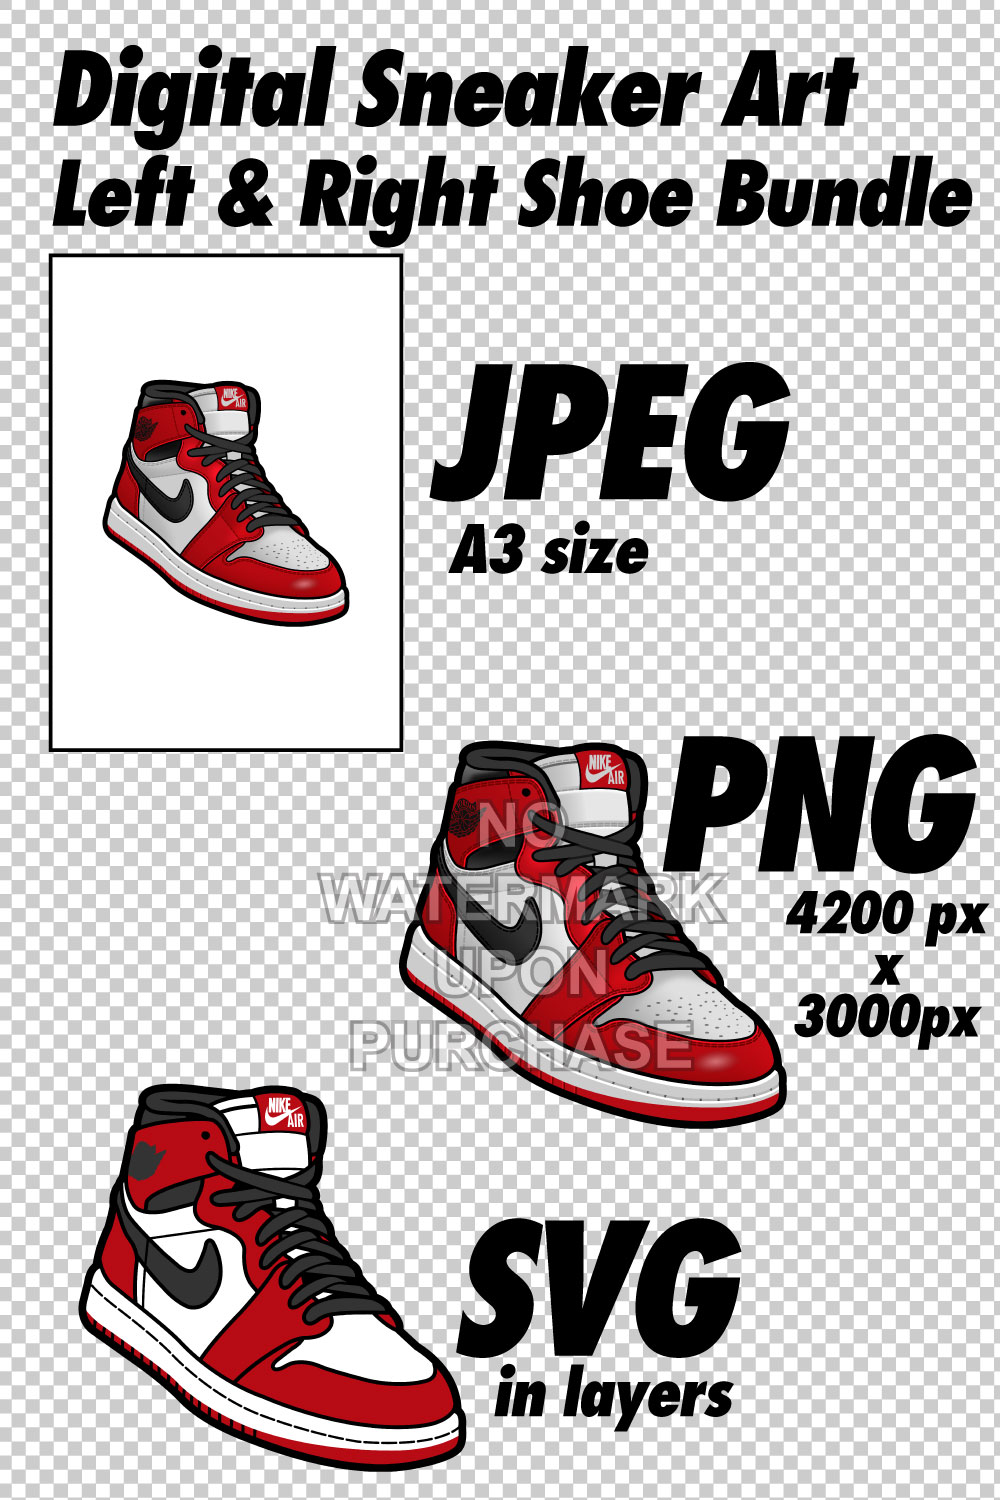 Air Jordan 1 Chicago JPEG PNG SVG right & left shoe bundle Digital Download pinterest preview image.